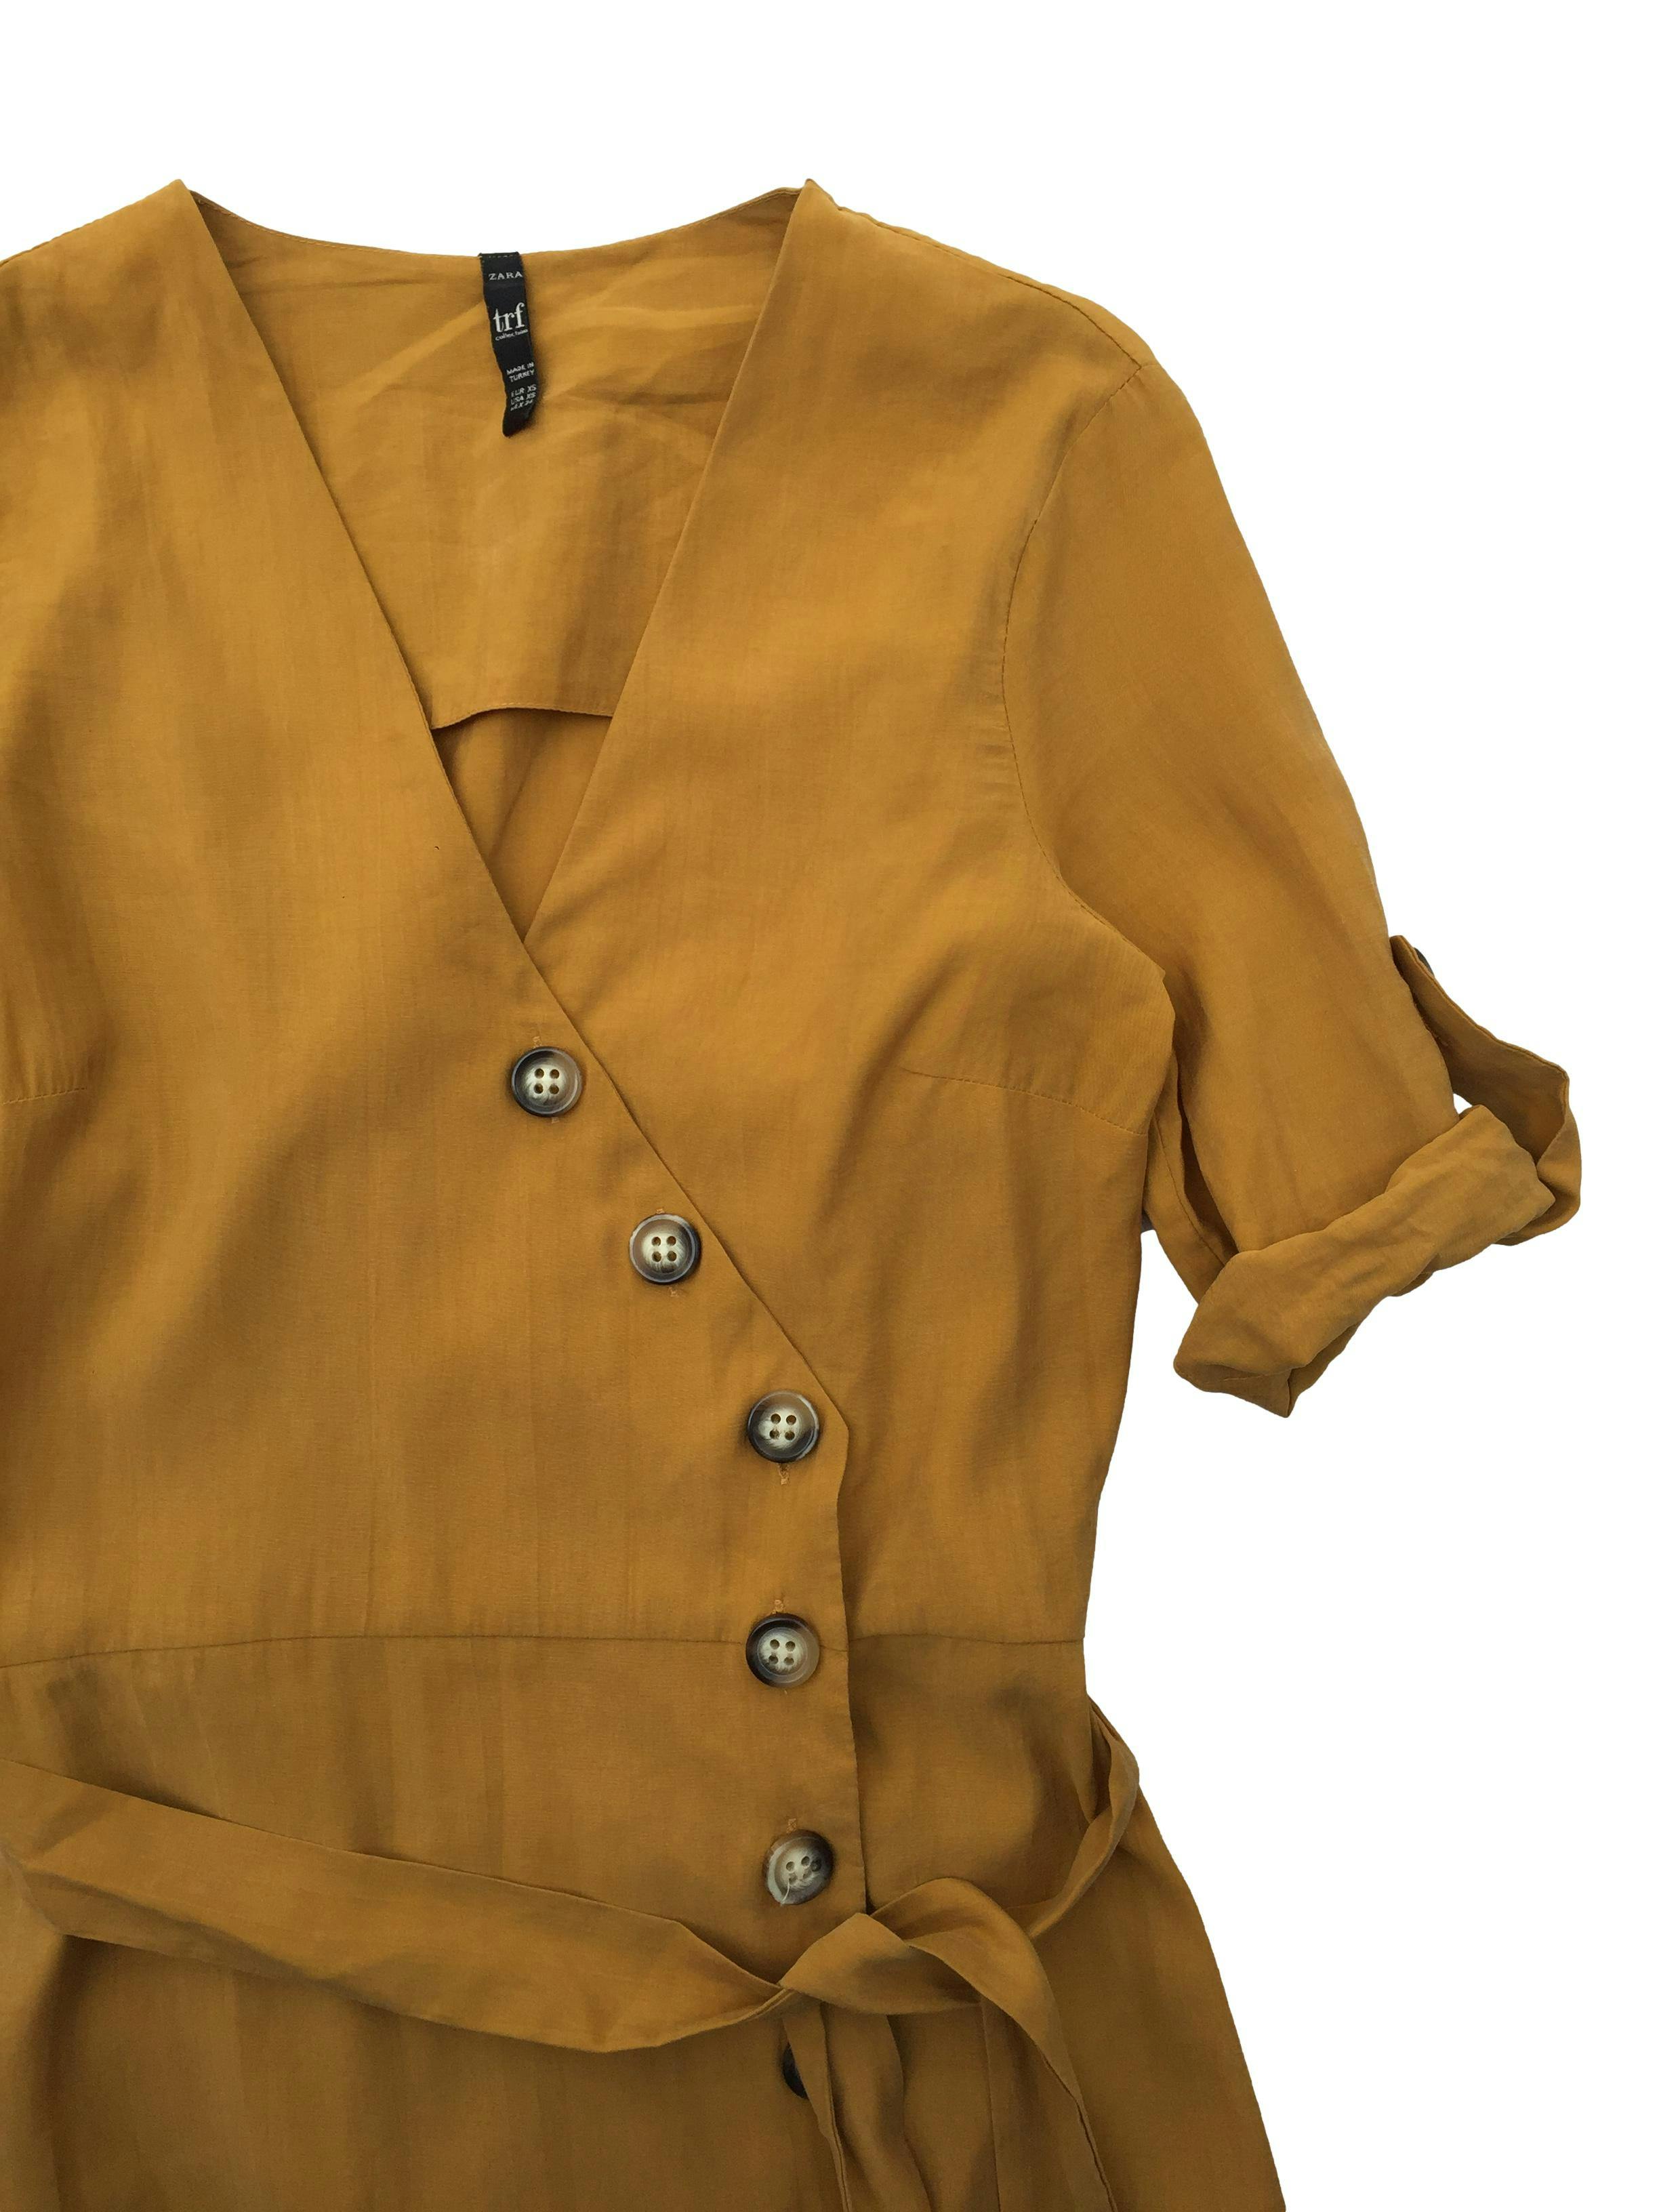 Vestido midi Zara mostaza, cruzado con botones laterales, elástico posterior y cinto. Busto 90cm Largo 120cm